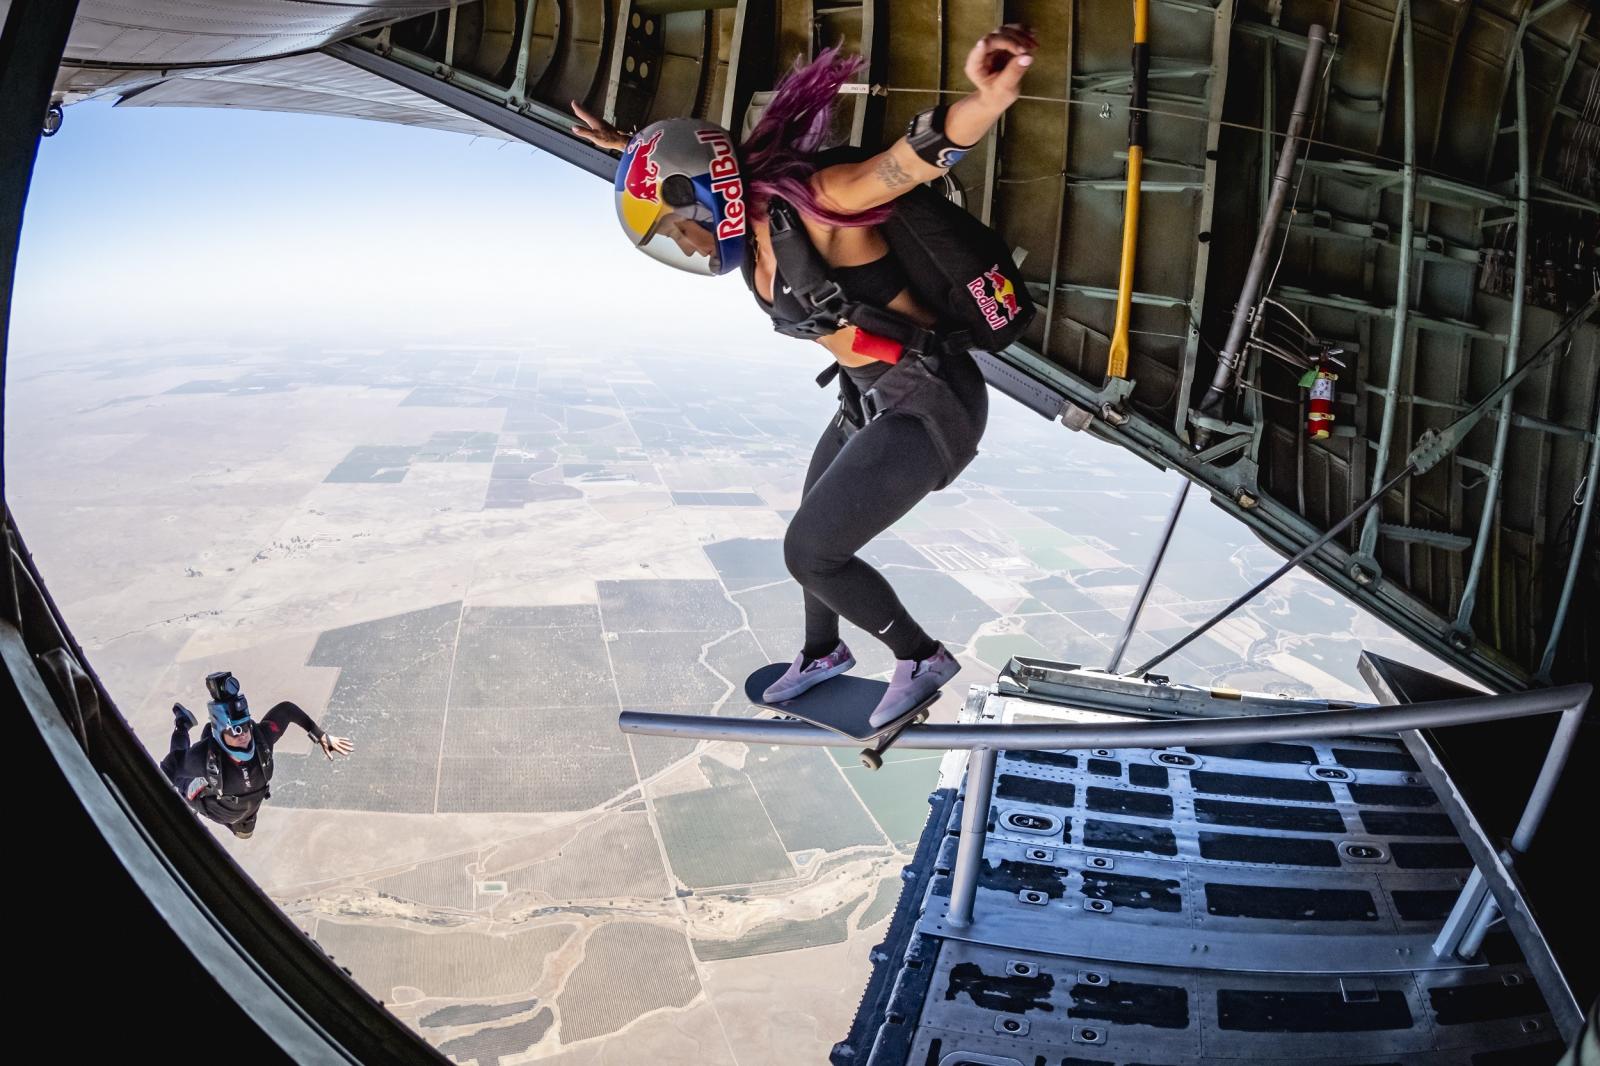 Inédito no mundo! Leticia Bufoni salta de avião com skate e realiza manobra histórica no céu da Califórnia